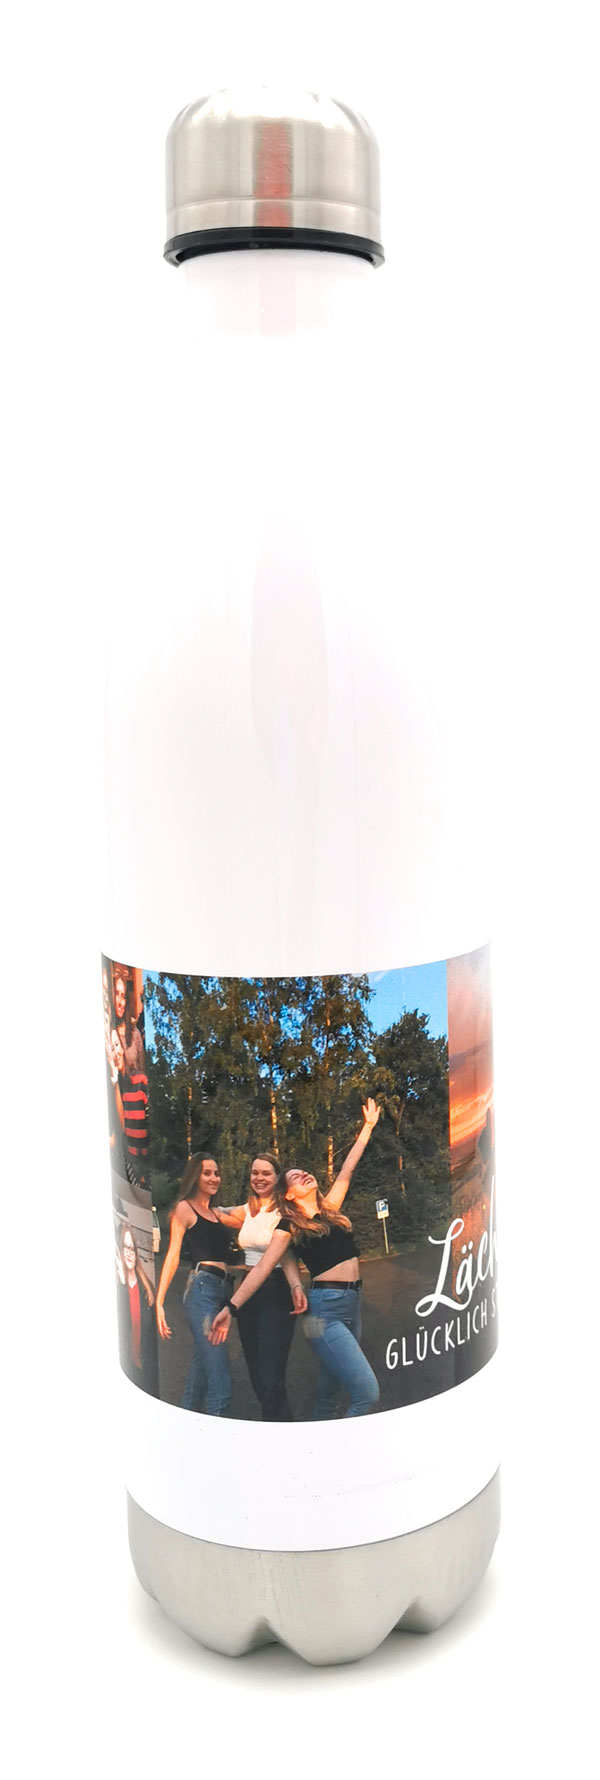 thermoflasche-druckwunder-fotodruck-druckprodukte-fotogeschenk-shop-kirchheim